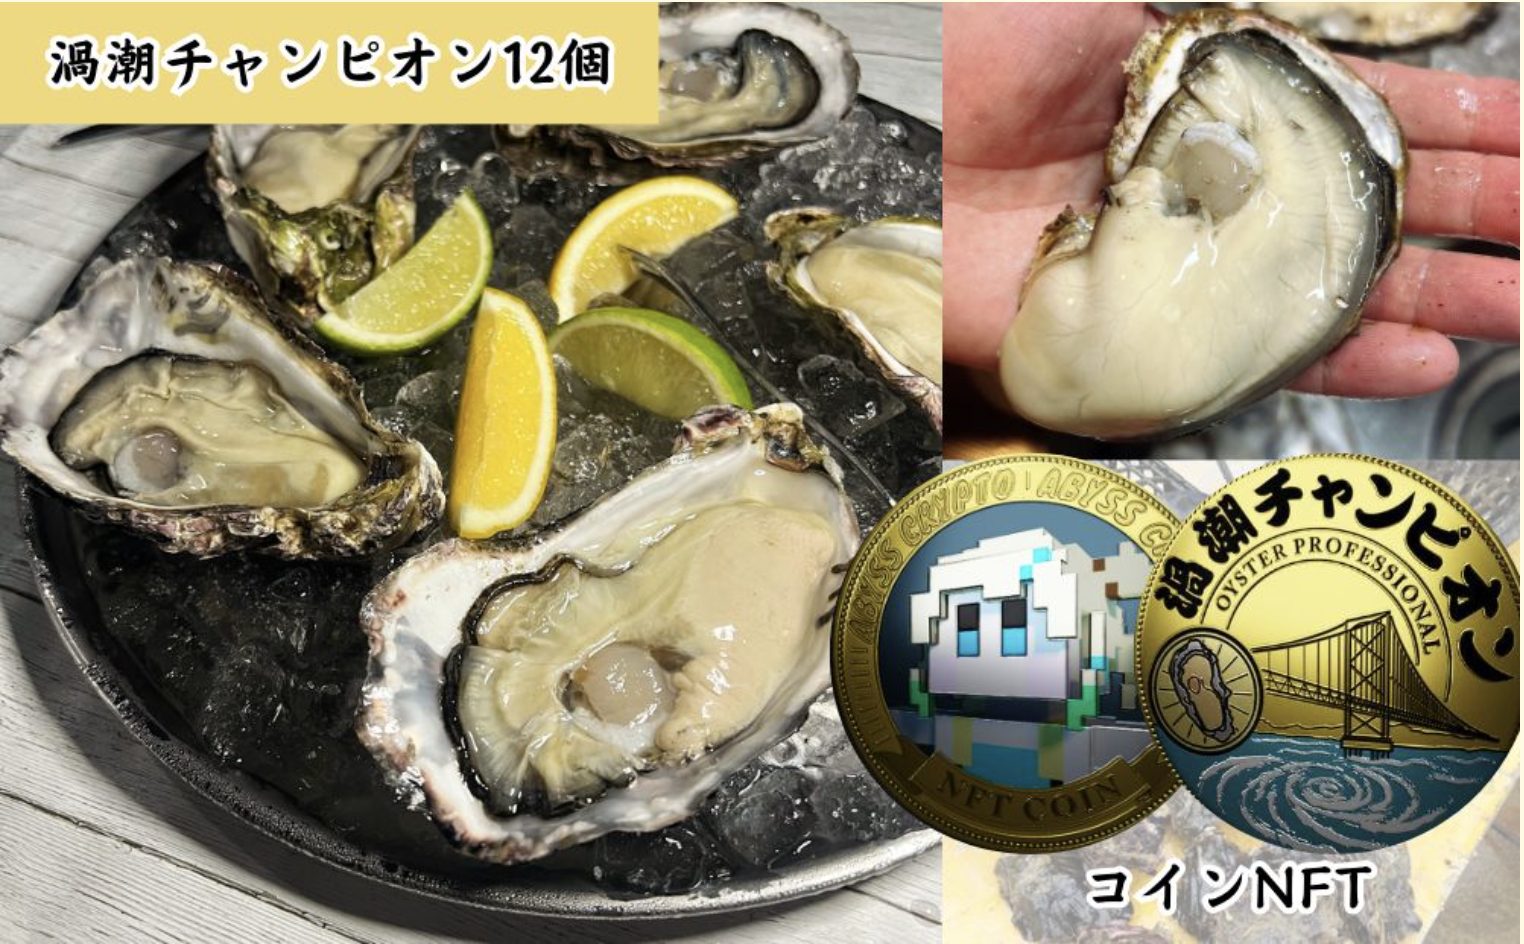 徳島県鳴門市のブランド牡蠣「渦潮チャンピオン」12個とコインNFT